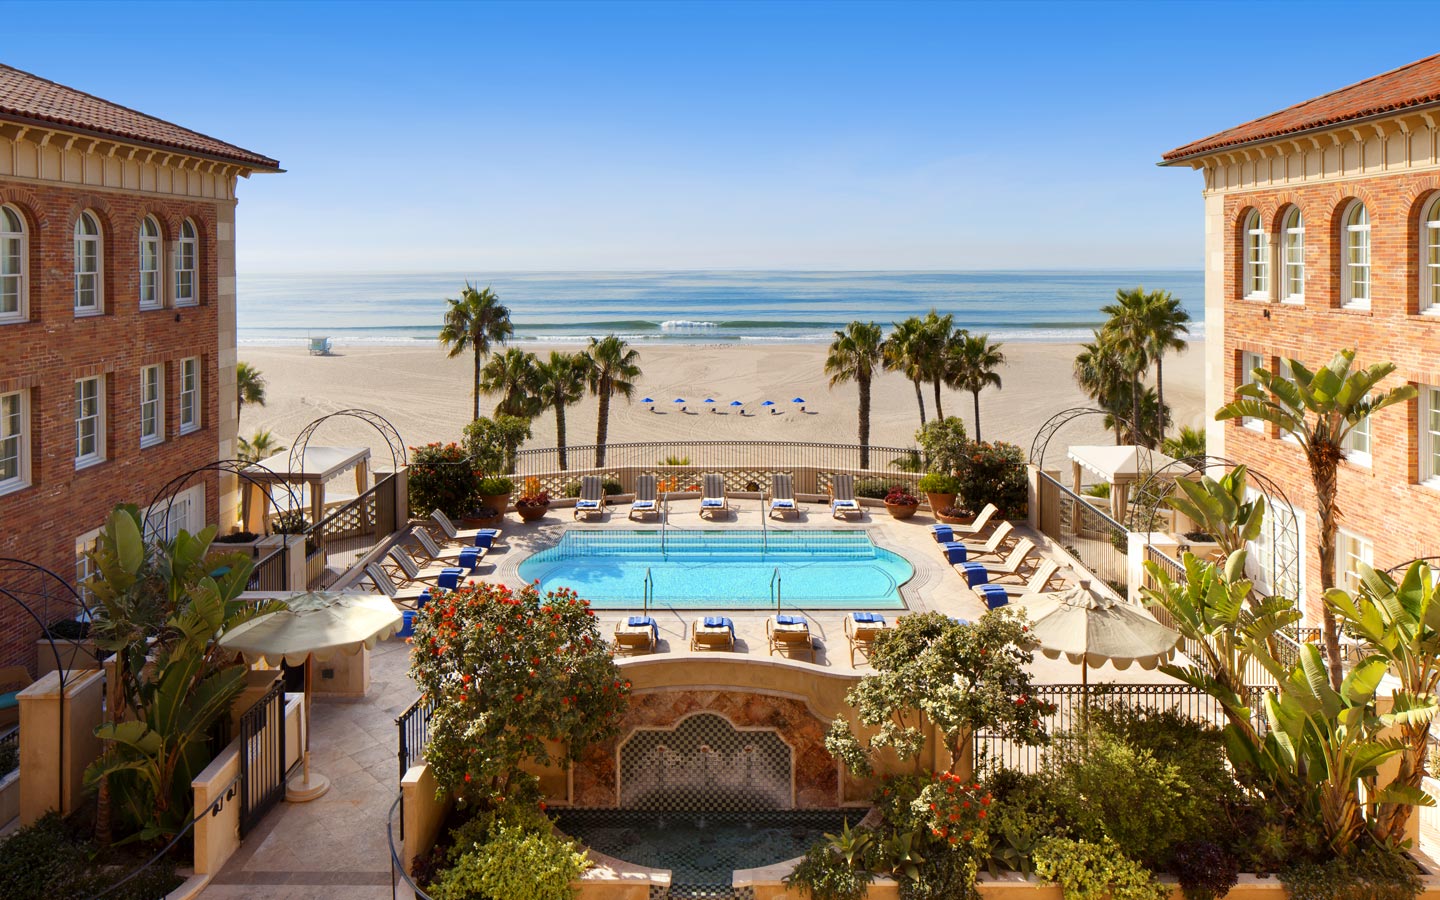 Hotel Casa del Mar, Santa Monica, Calif.